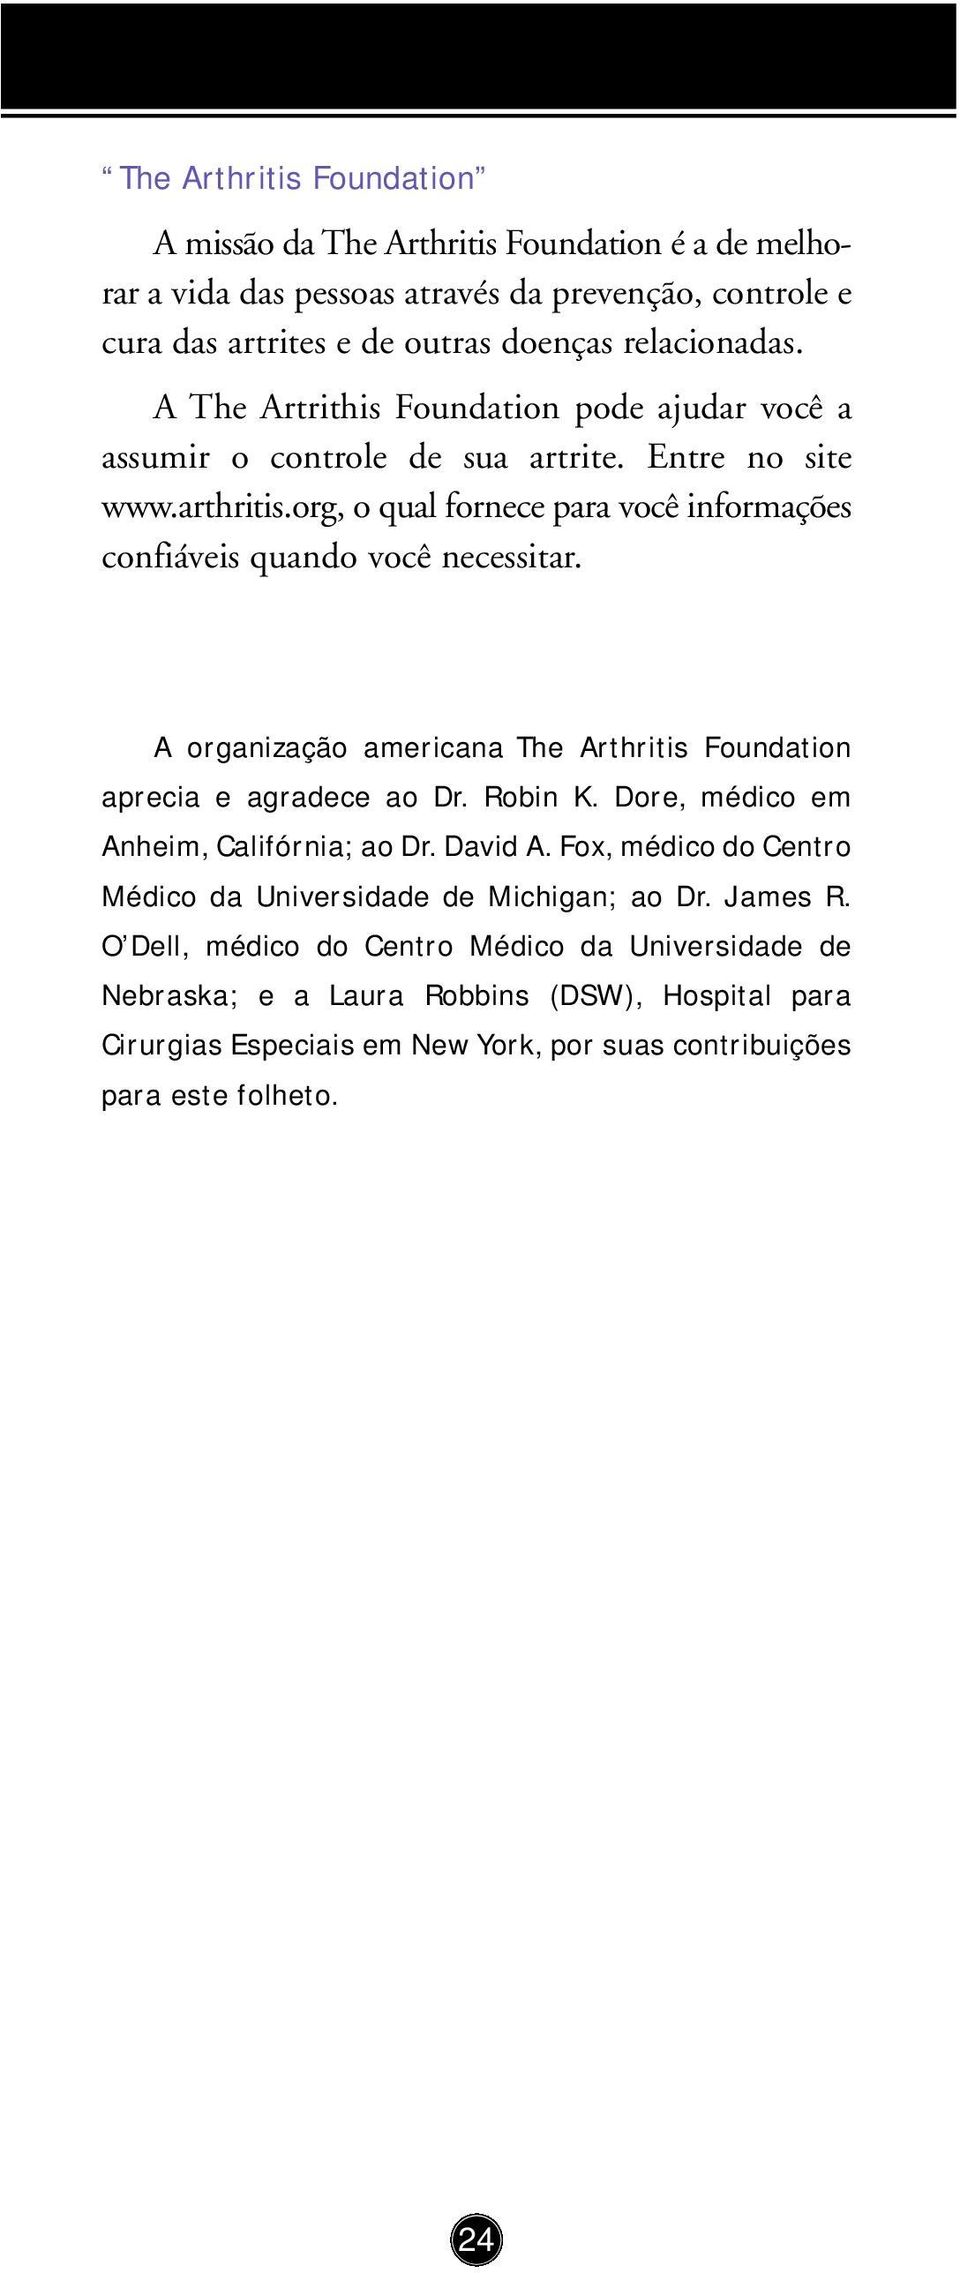 A organização americana The Arthritis Foundation aprecia e agradece ao Dr. Robin K. Dore, médico em Anheim, Califórnia; ao Dr. David A.